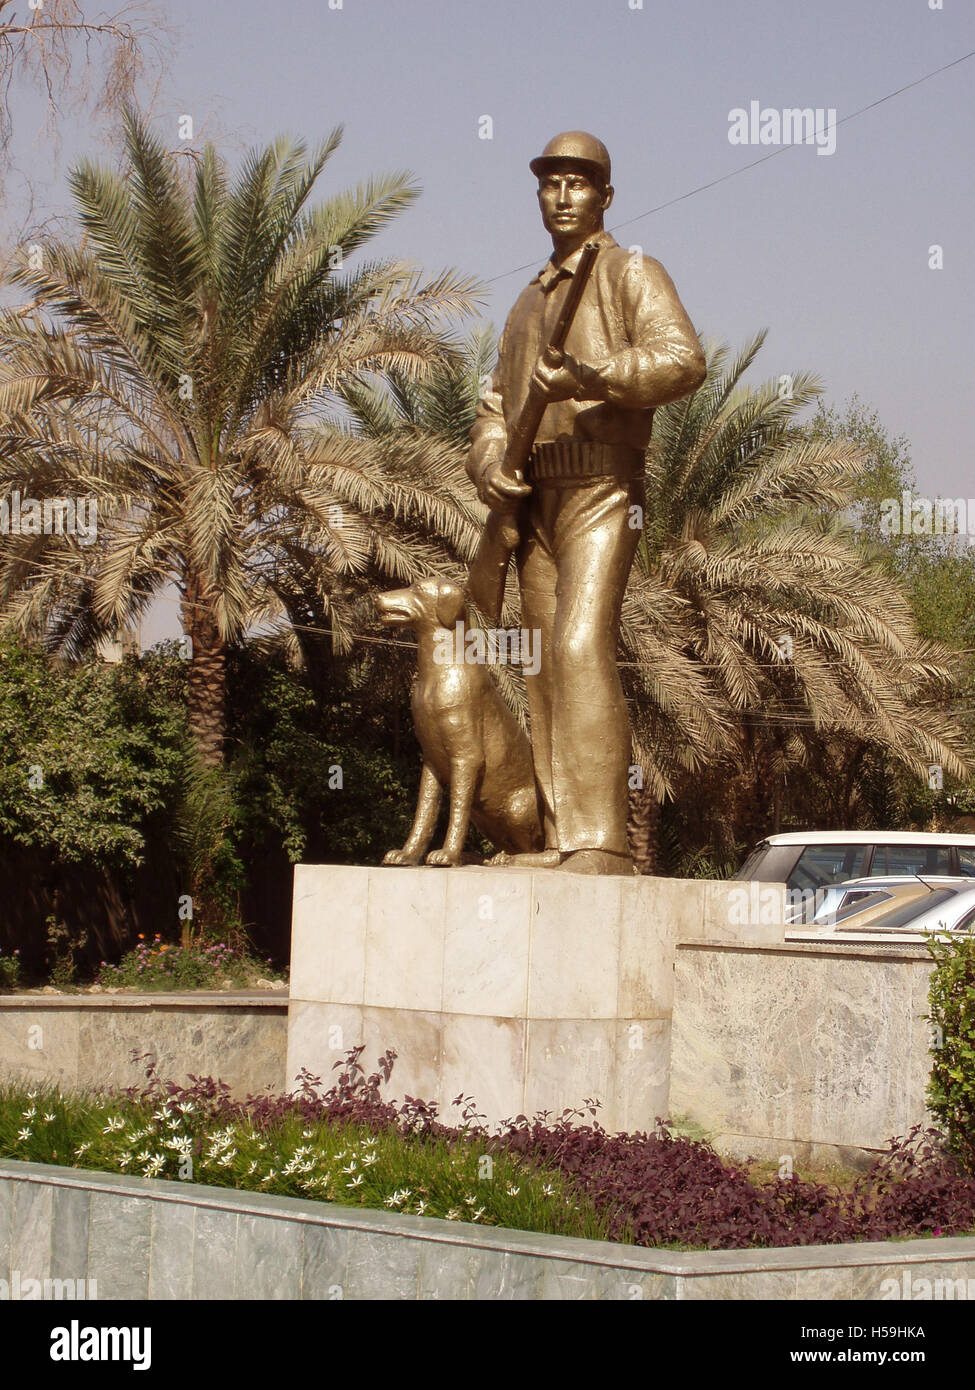 23 octobre 2003 une statue à l'extérieur du Club de chasse de l'Iraq, Bagdad, Iraq, un lieu de prédilection des fils aîné de Saddam Hussein, Oudaï. Banque D'Images